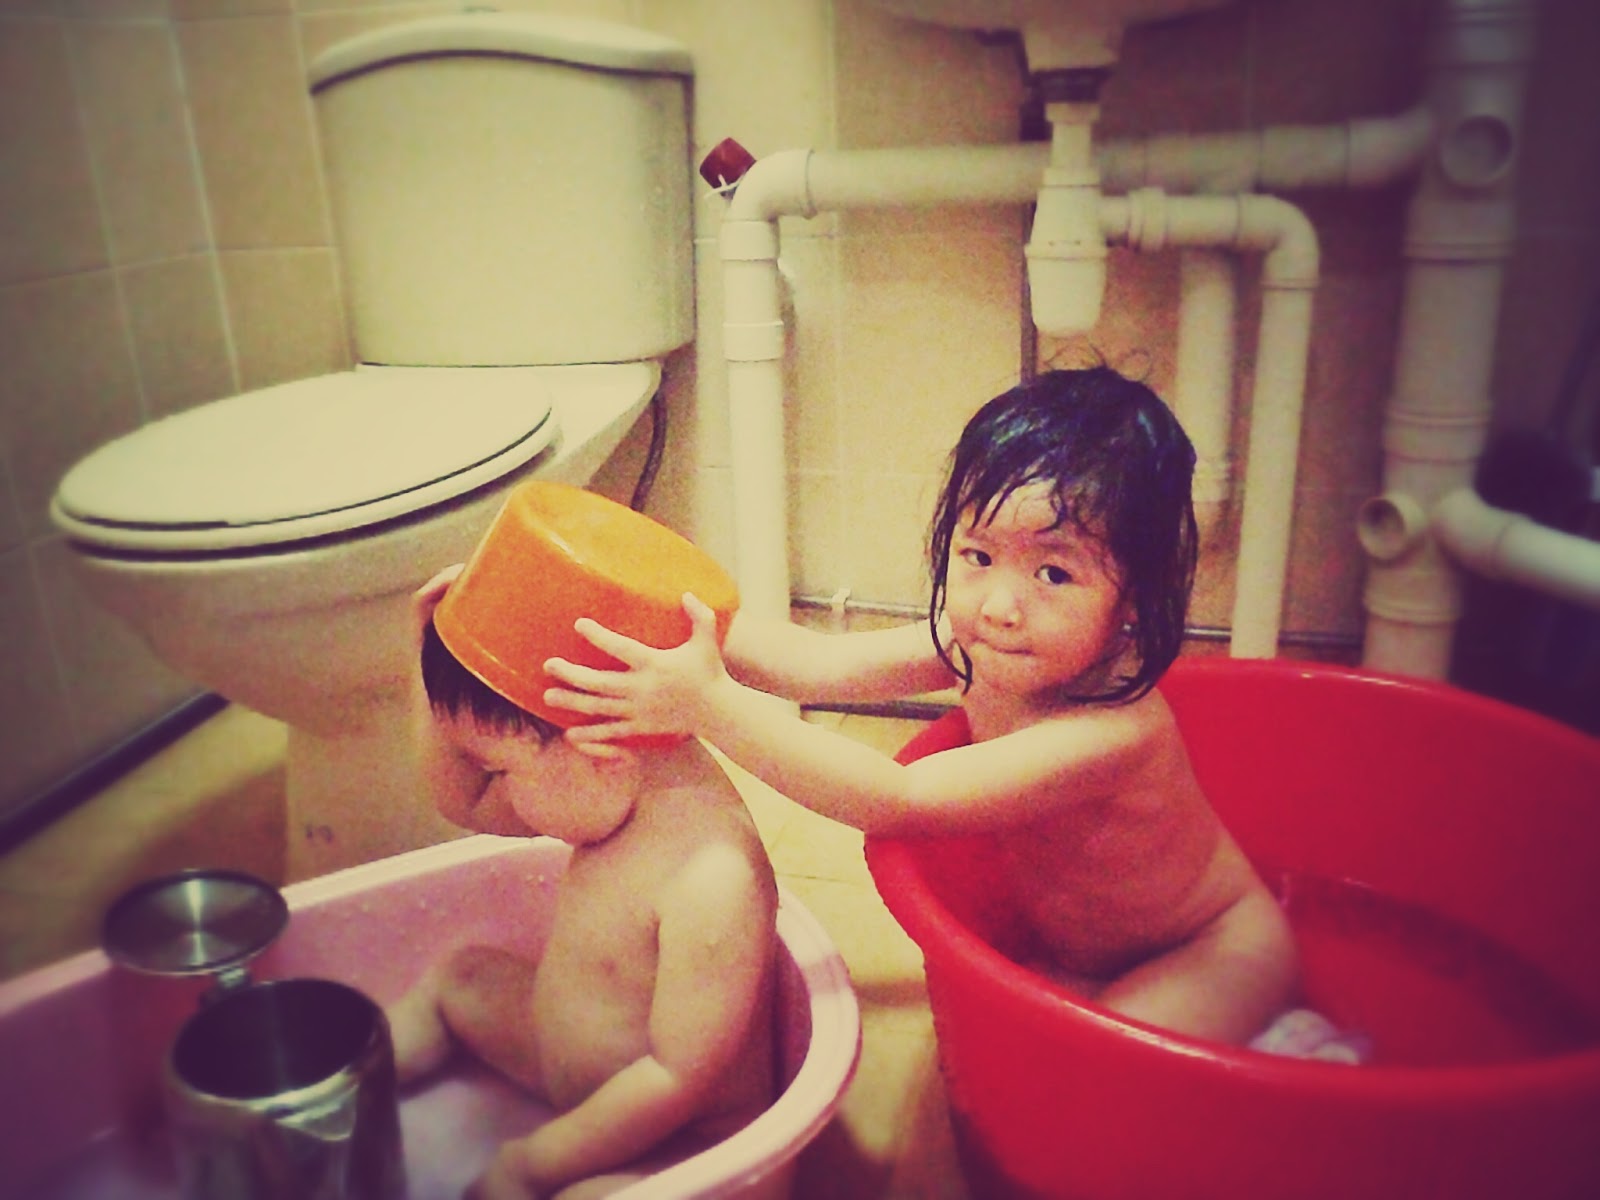 Girls and boys taking baths